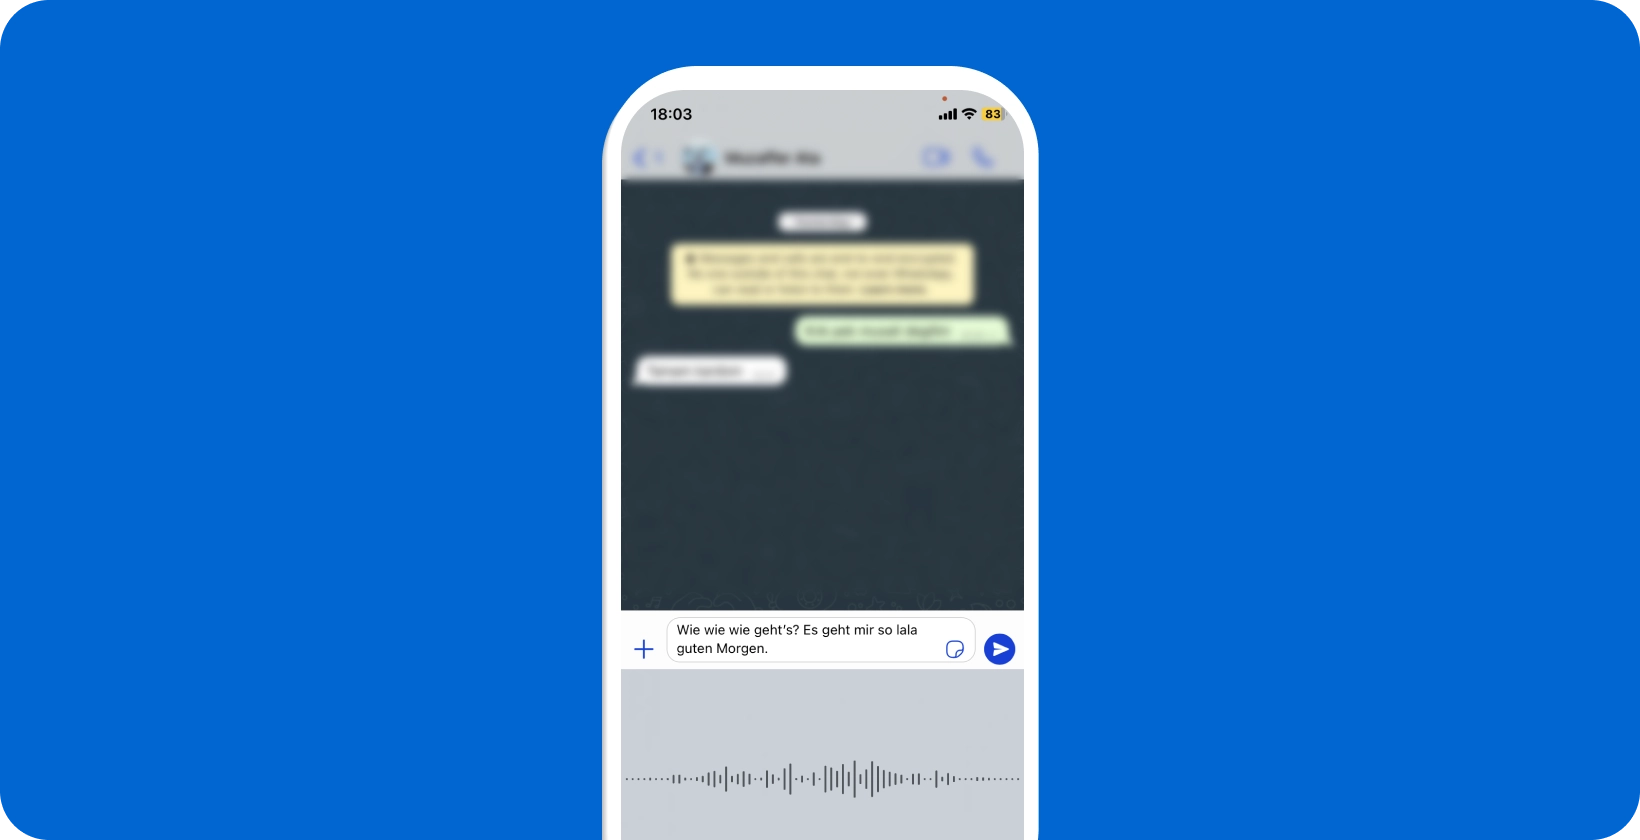 Pametni telefon koji prikazuje WhatsApp diktat glasa u tijeku, prikazujući pretvorbu govora u tekst u stvarnom vremenu.